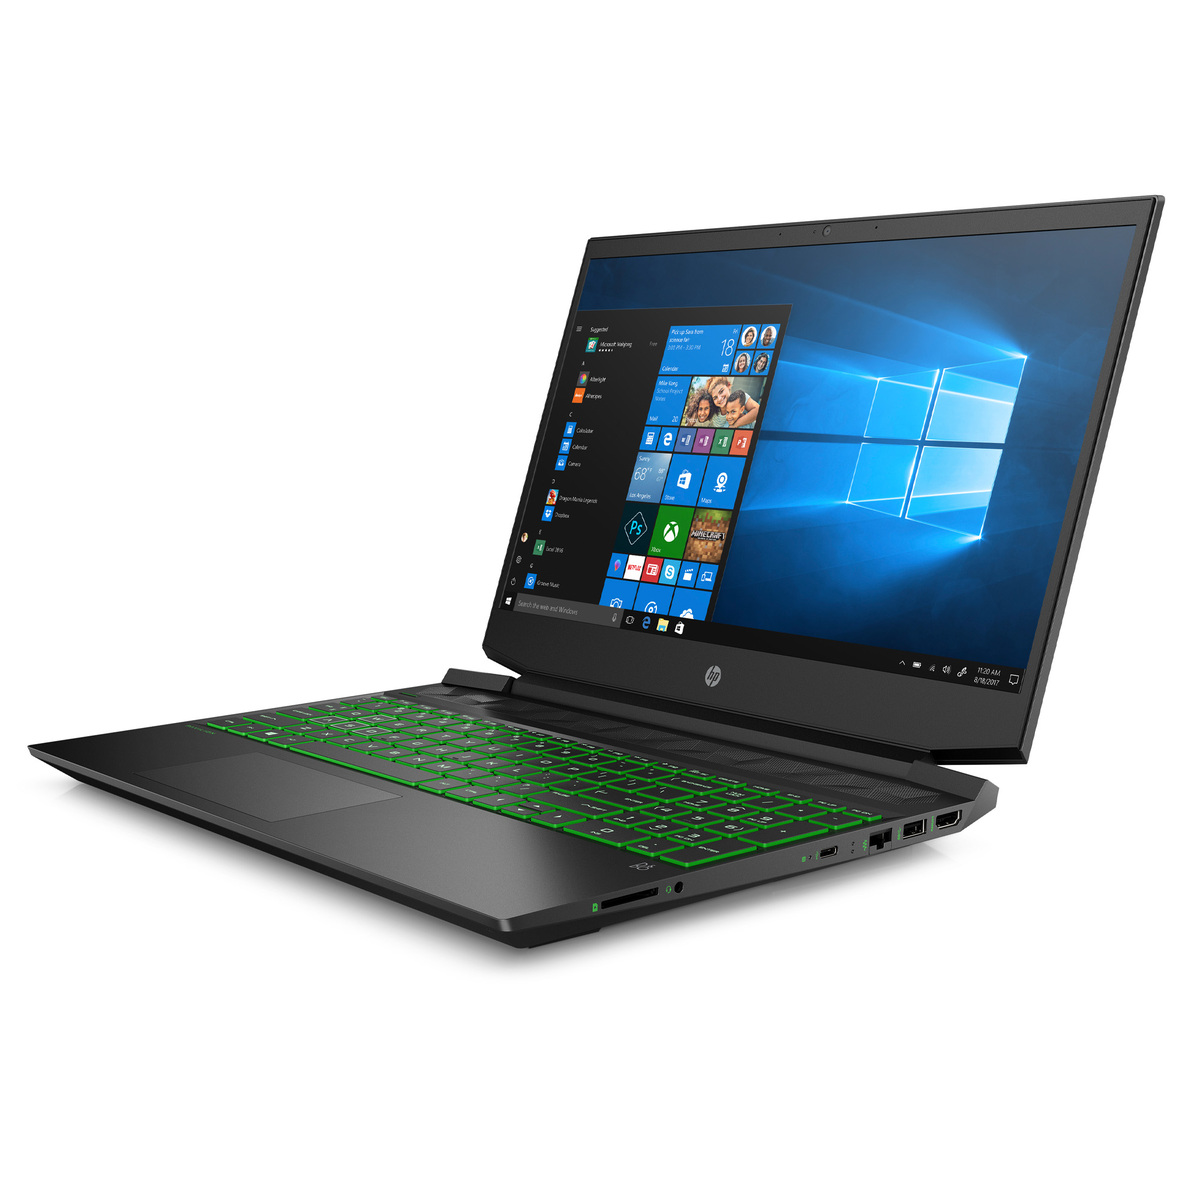 HP Pavilion Gaming Laptop 15.6" FHD,15-EC2007NE (4A9E9EA) AMD Ryzen™ 7 processor,16GB RAM,256GB SSD,1TB HDD,NVIDIA® GeForce® GTX 1650,Windows 10,Arabic/English Keyboard,Black